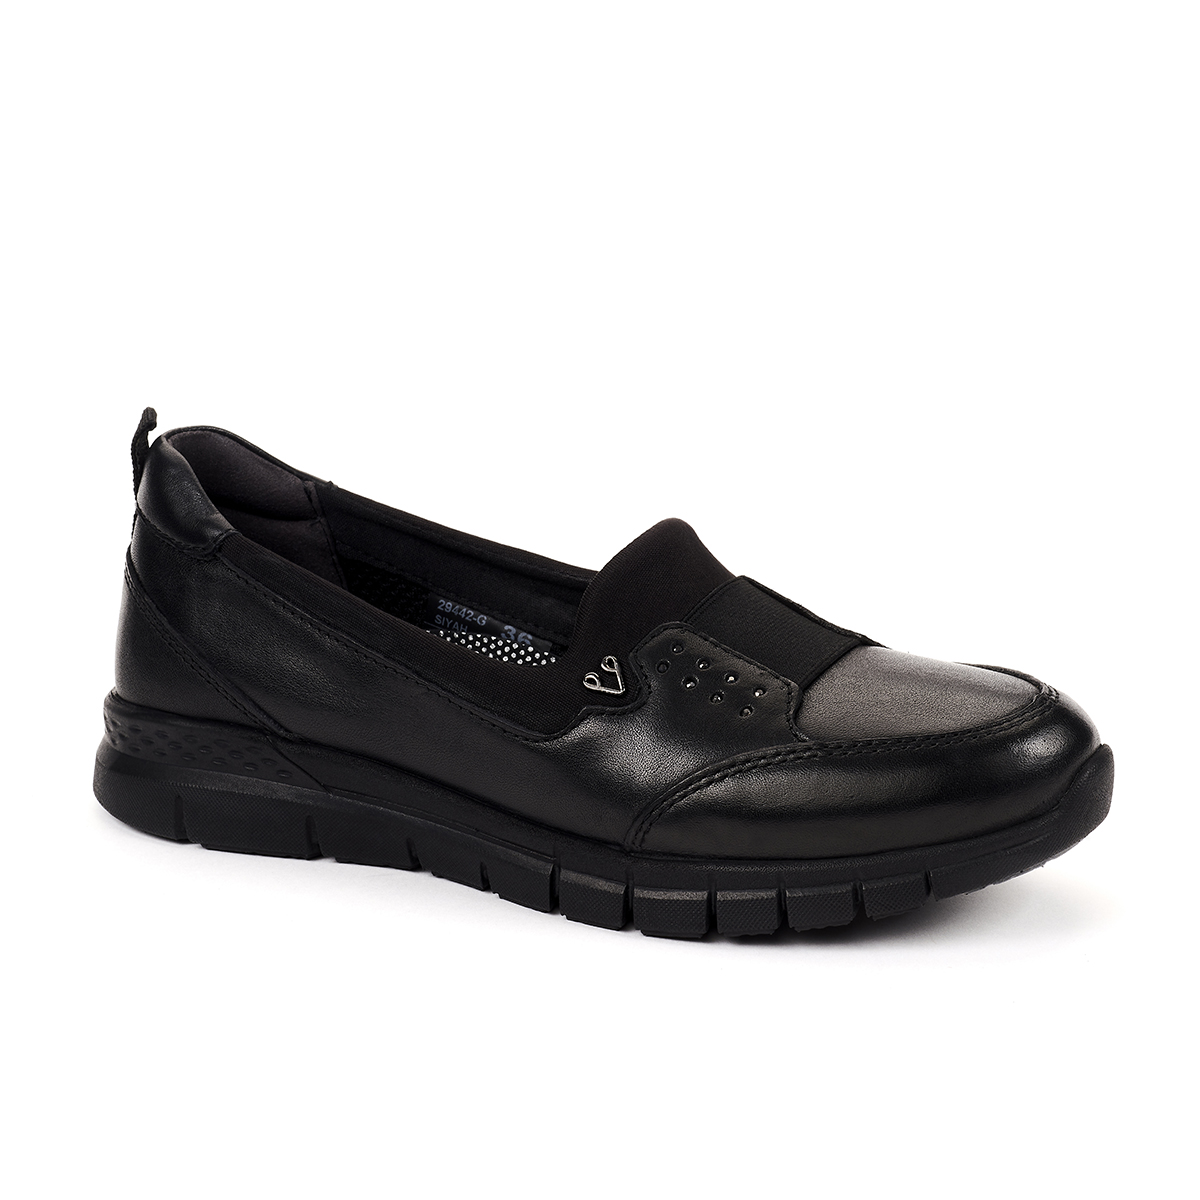 Forelli - Forelli 29442-G Comfort Kadın Ayakkabı Siyah